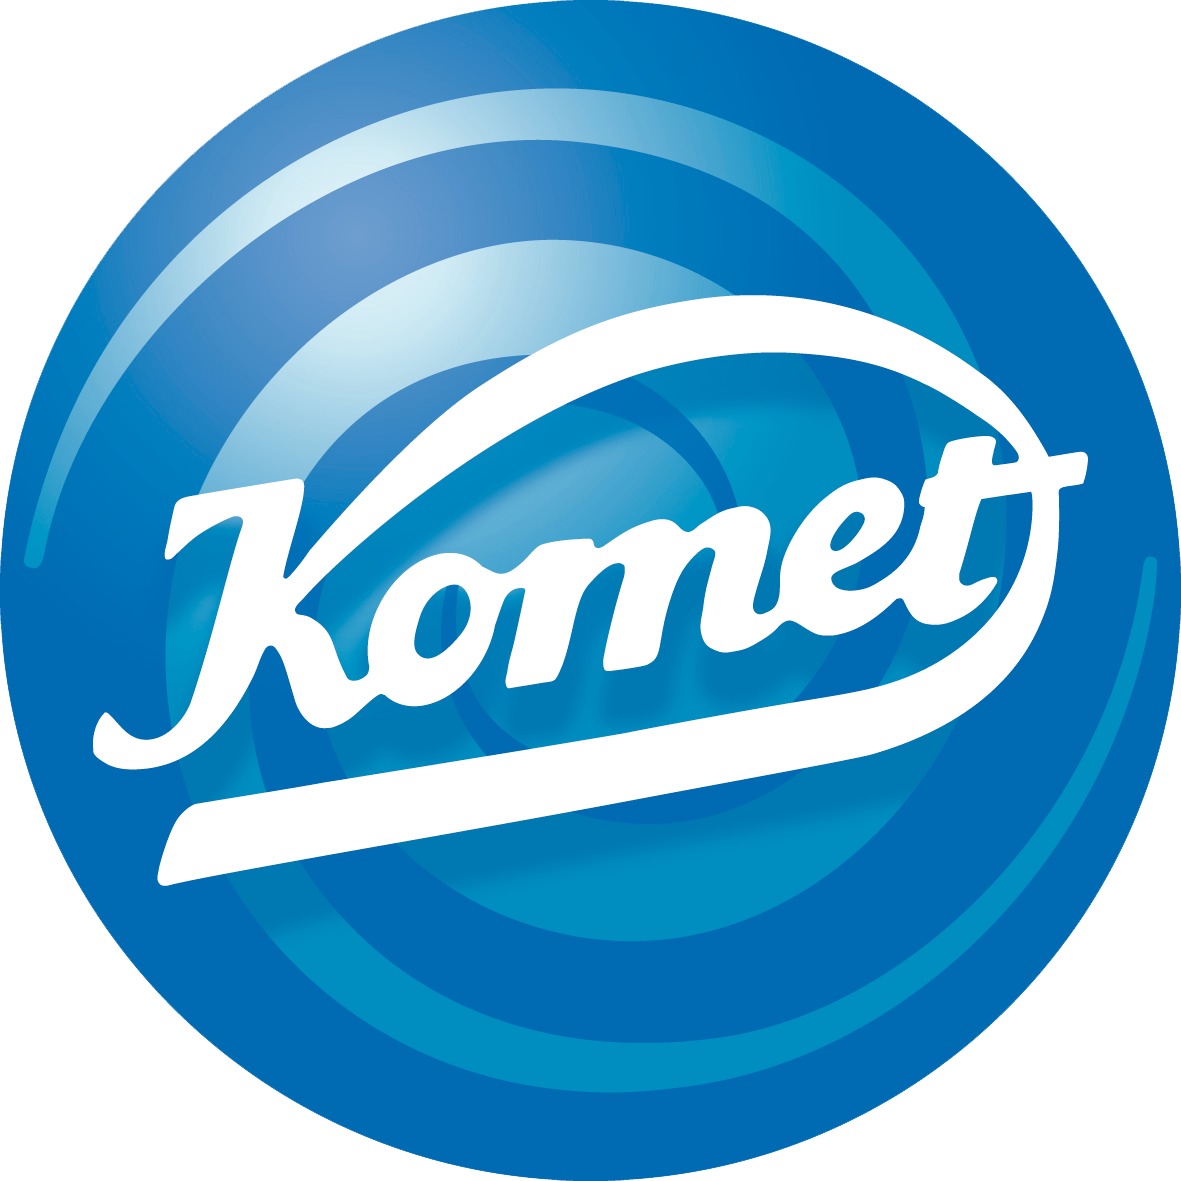 Komet logo